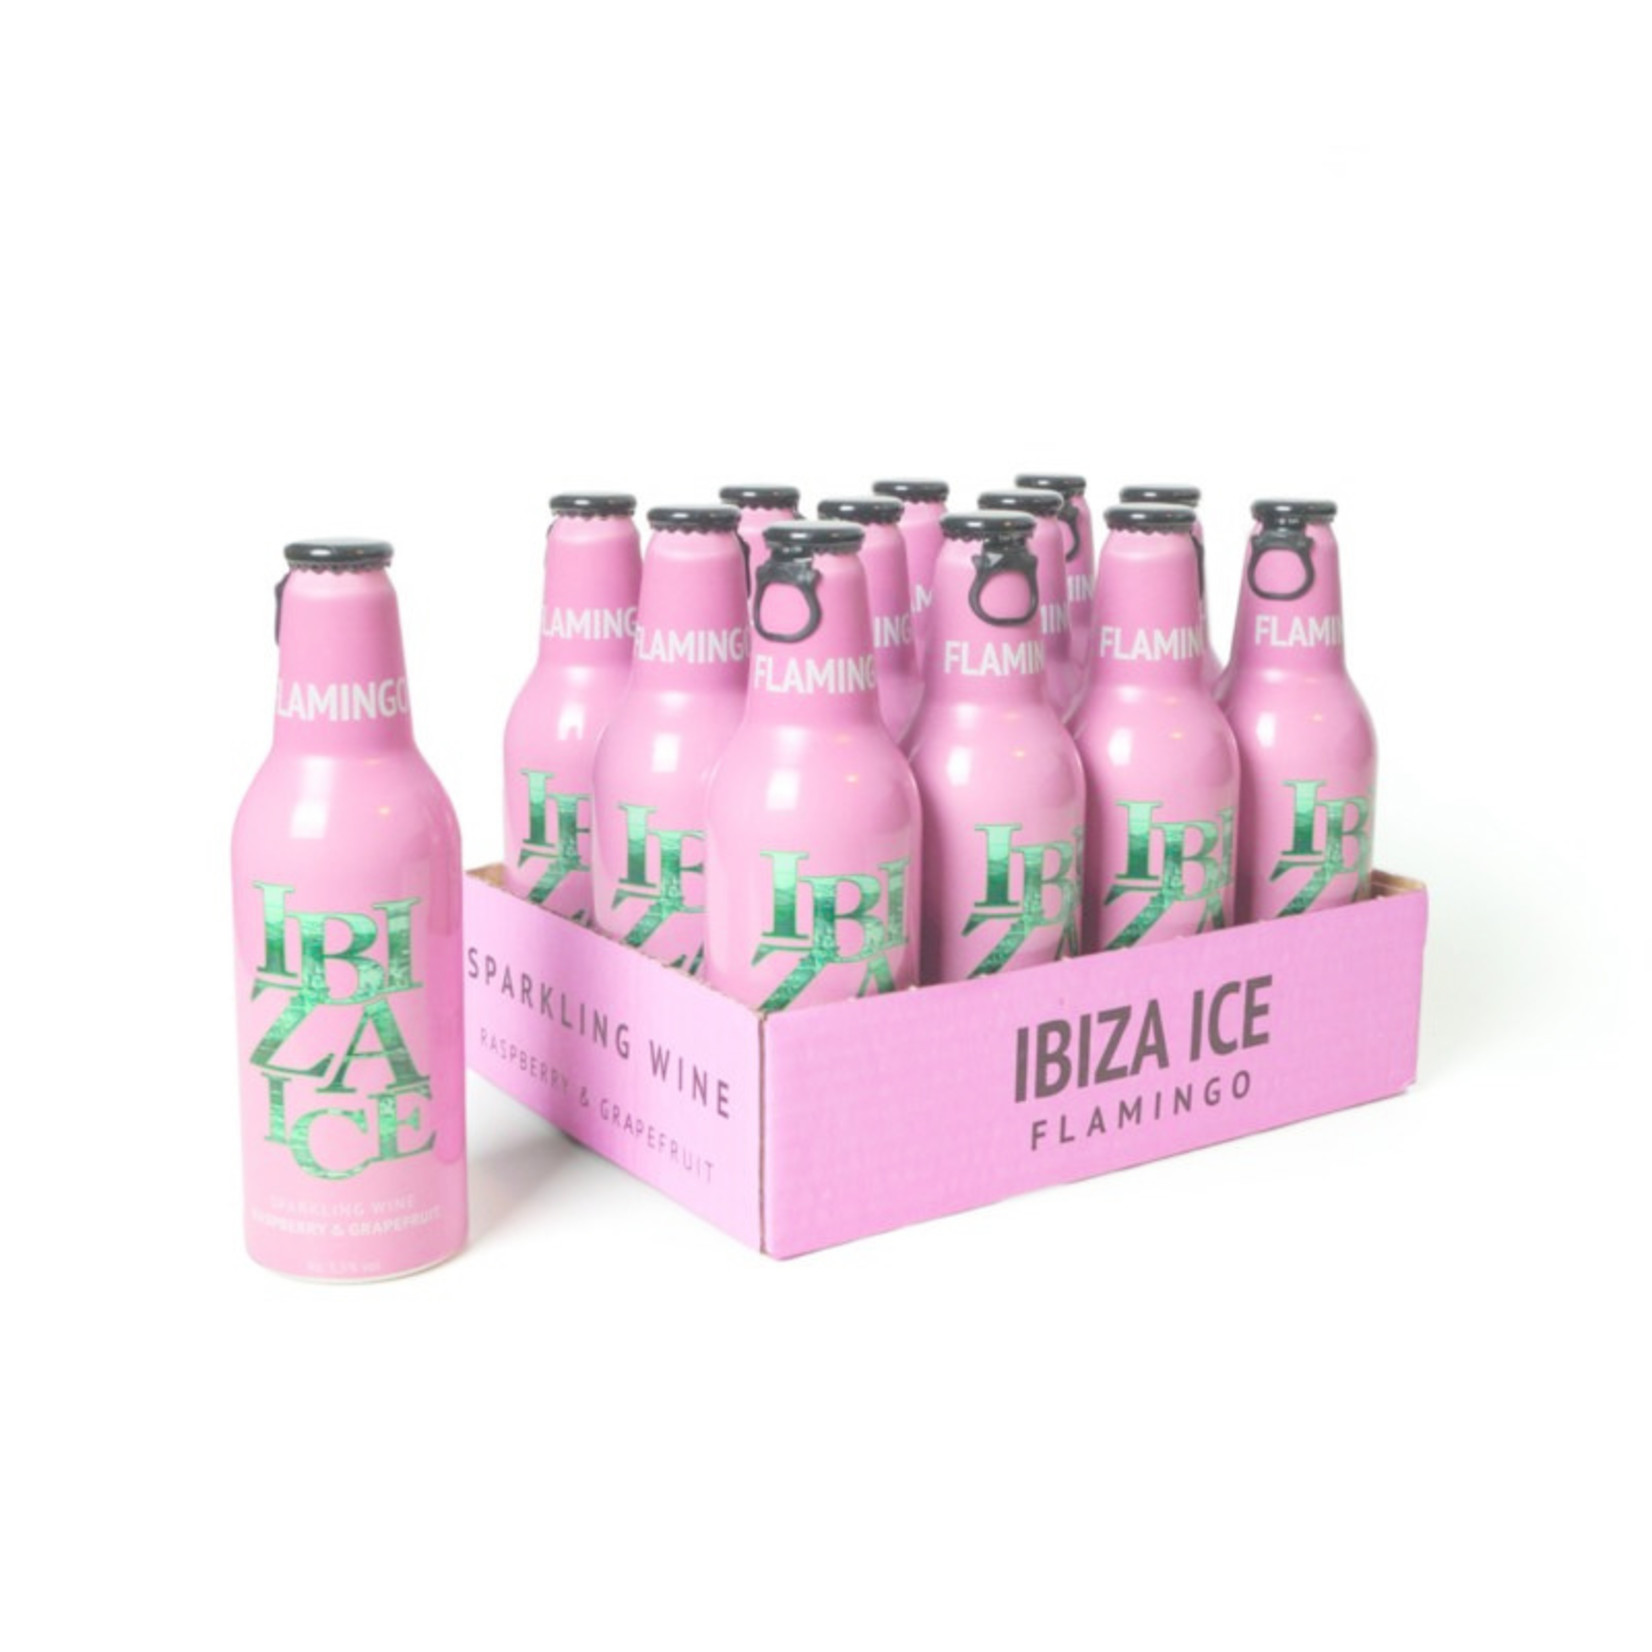 Ibiza Ice Flamingo (tray 12 x 330ml)